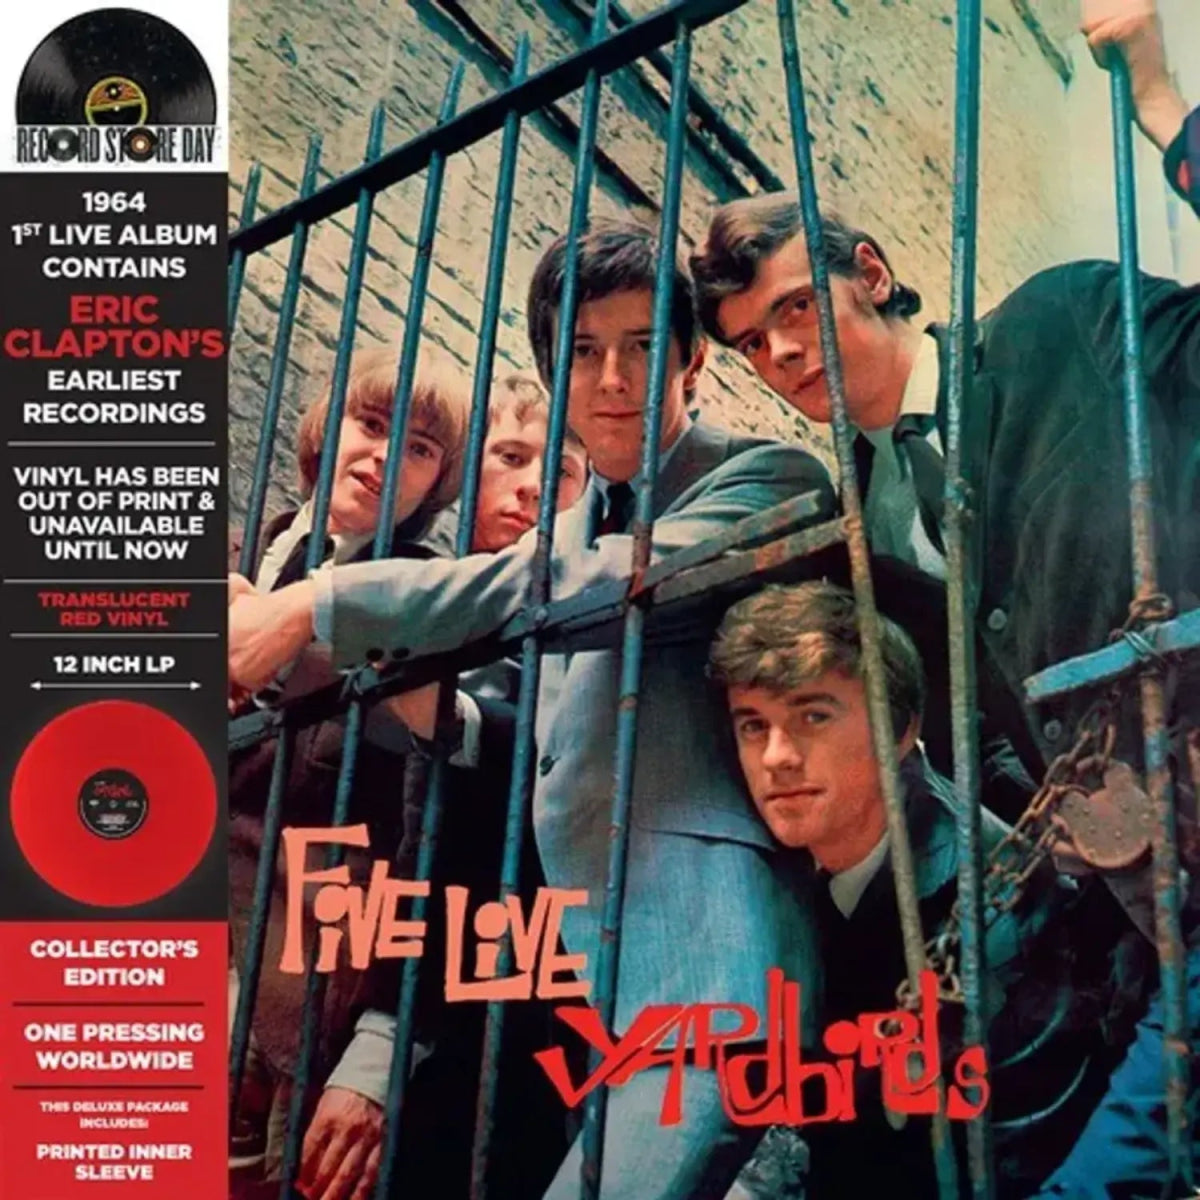 The Yardbirds - Five Live Yardbirds Vinyl